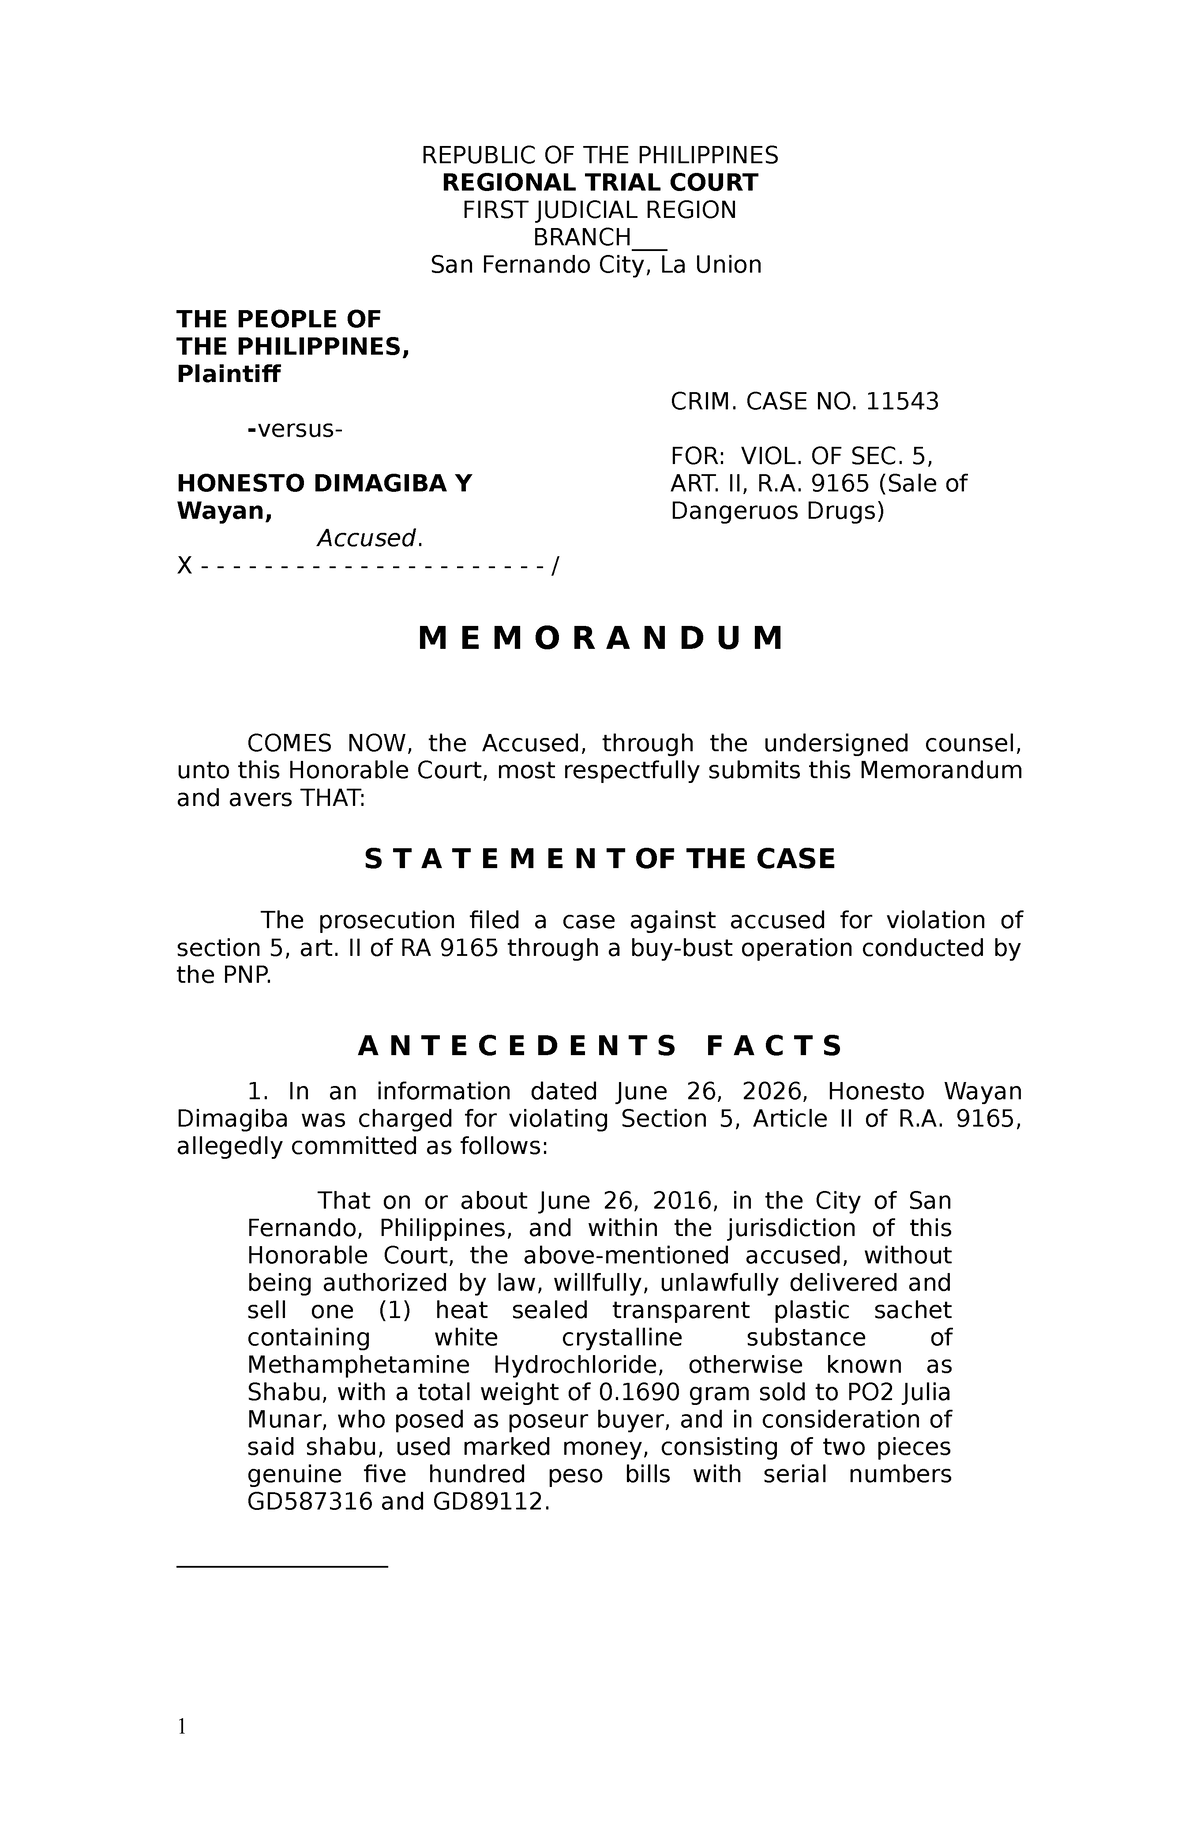 legal-memorandum-sample-republic-of-the-philippines-regional-trial